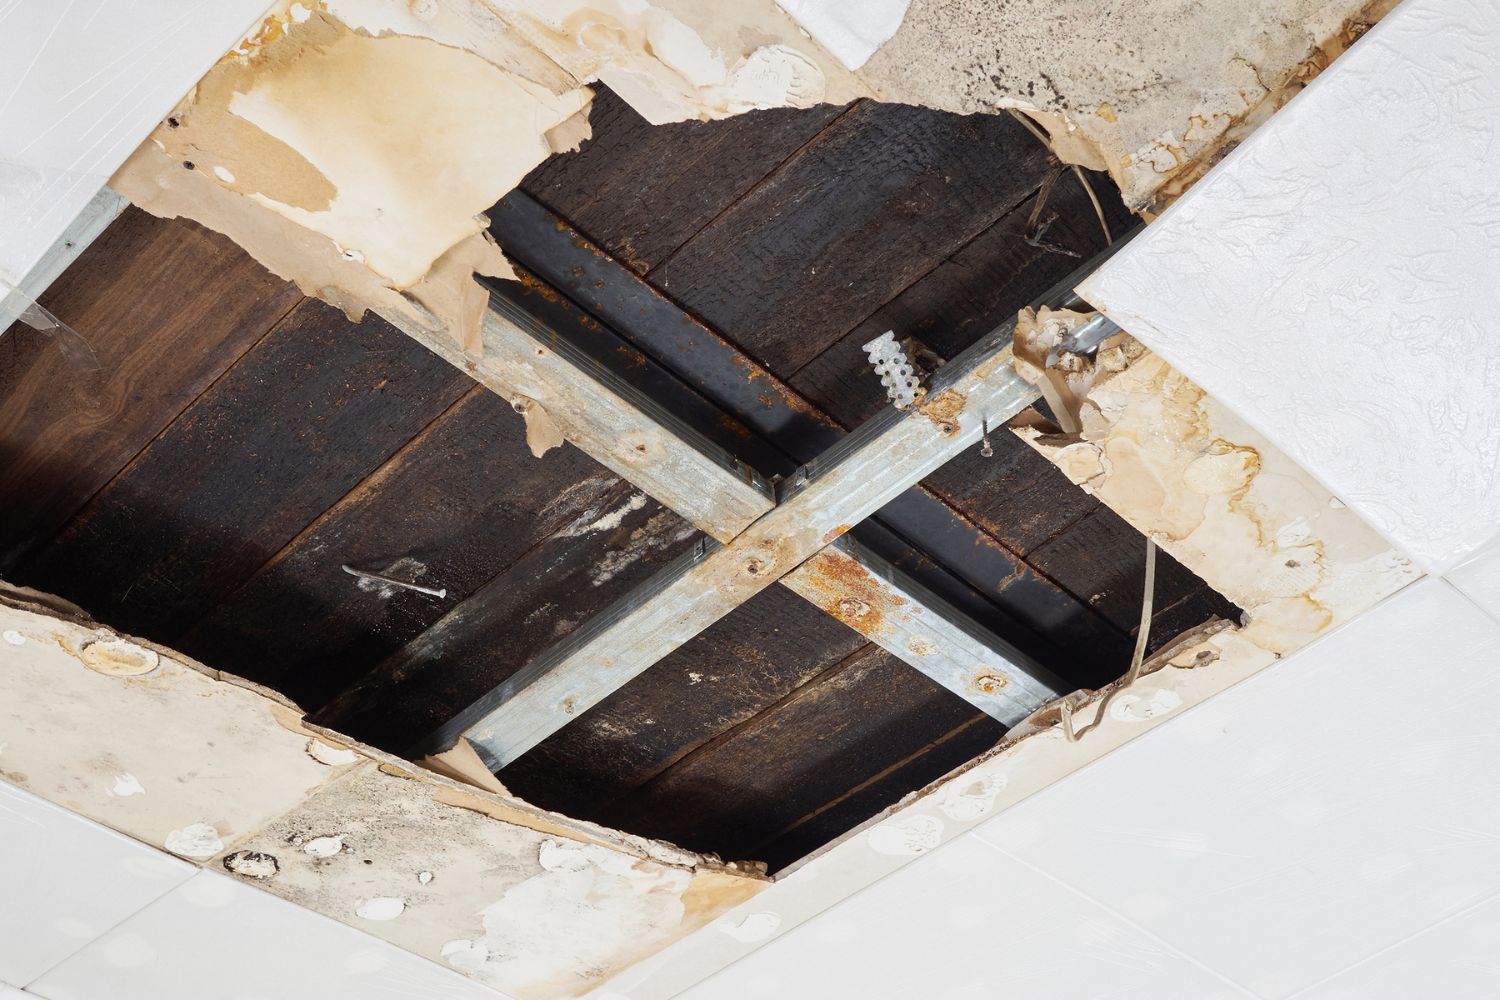 Ceiling Repair Cost